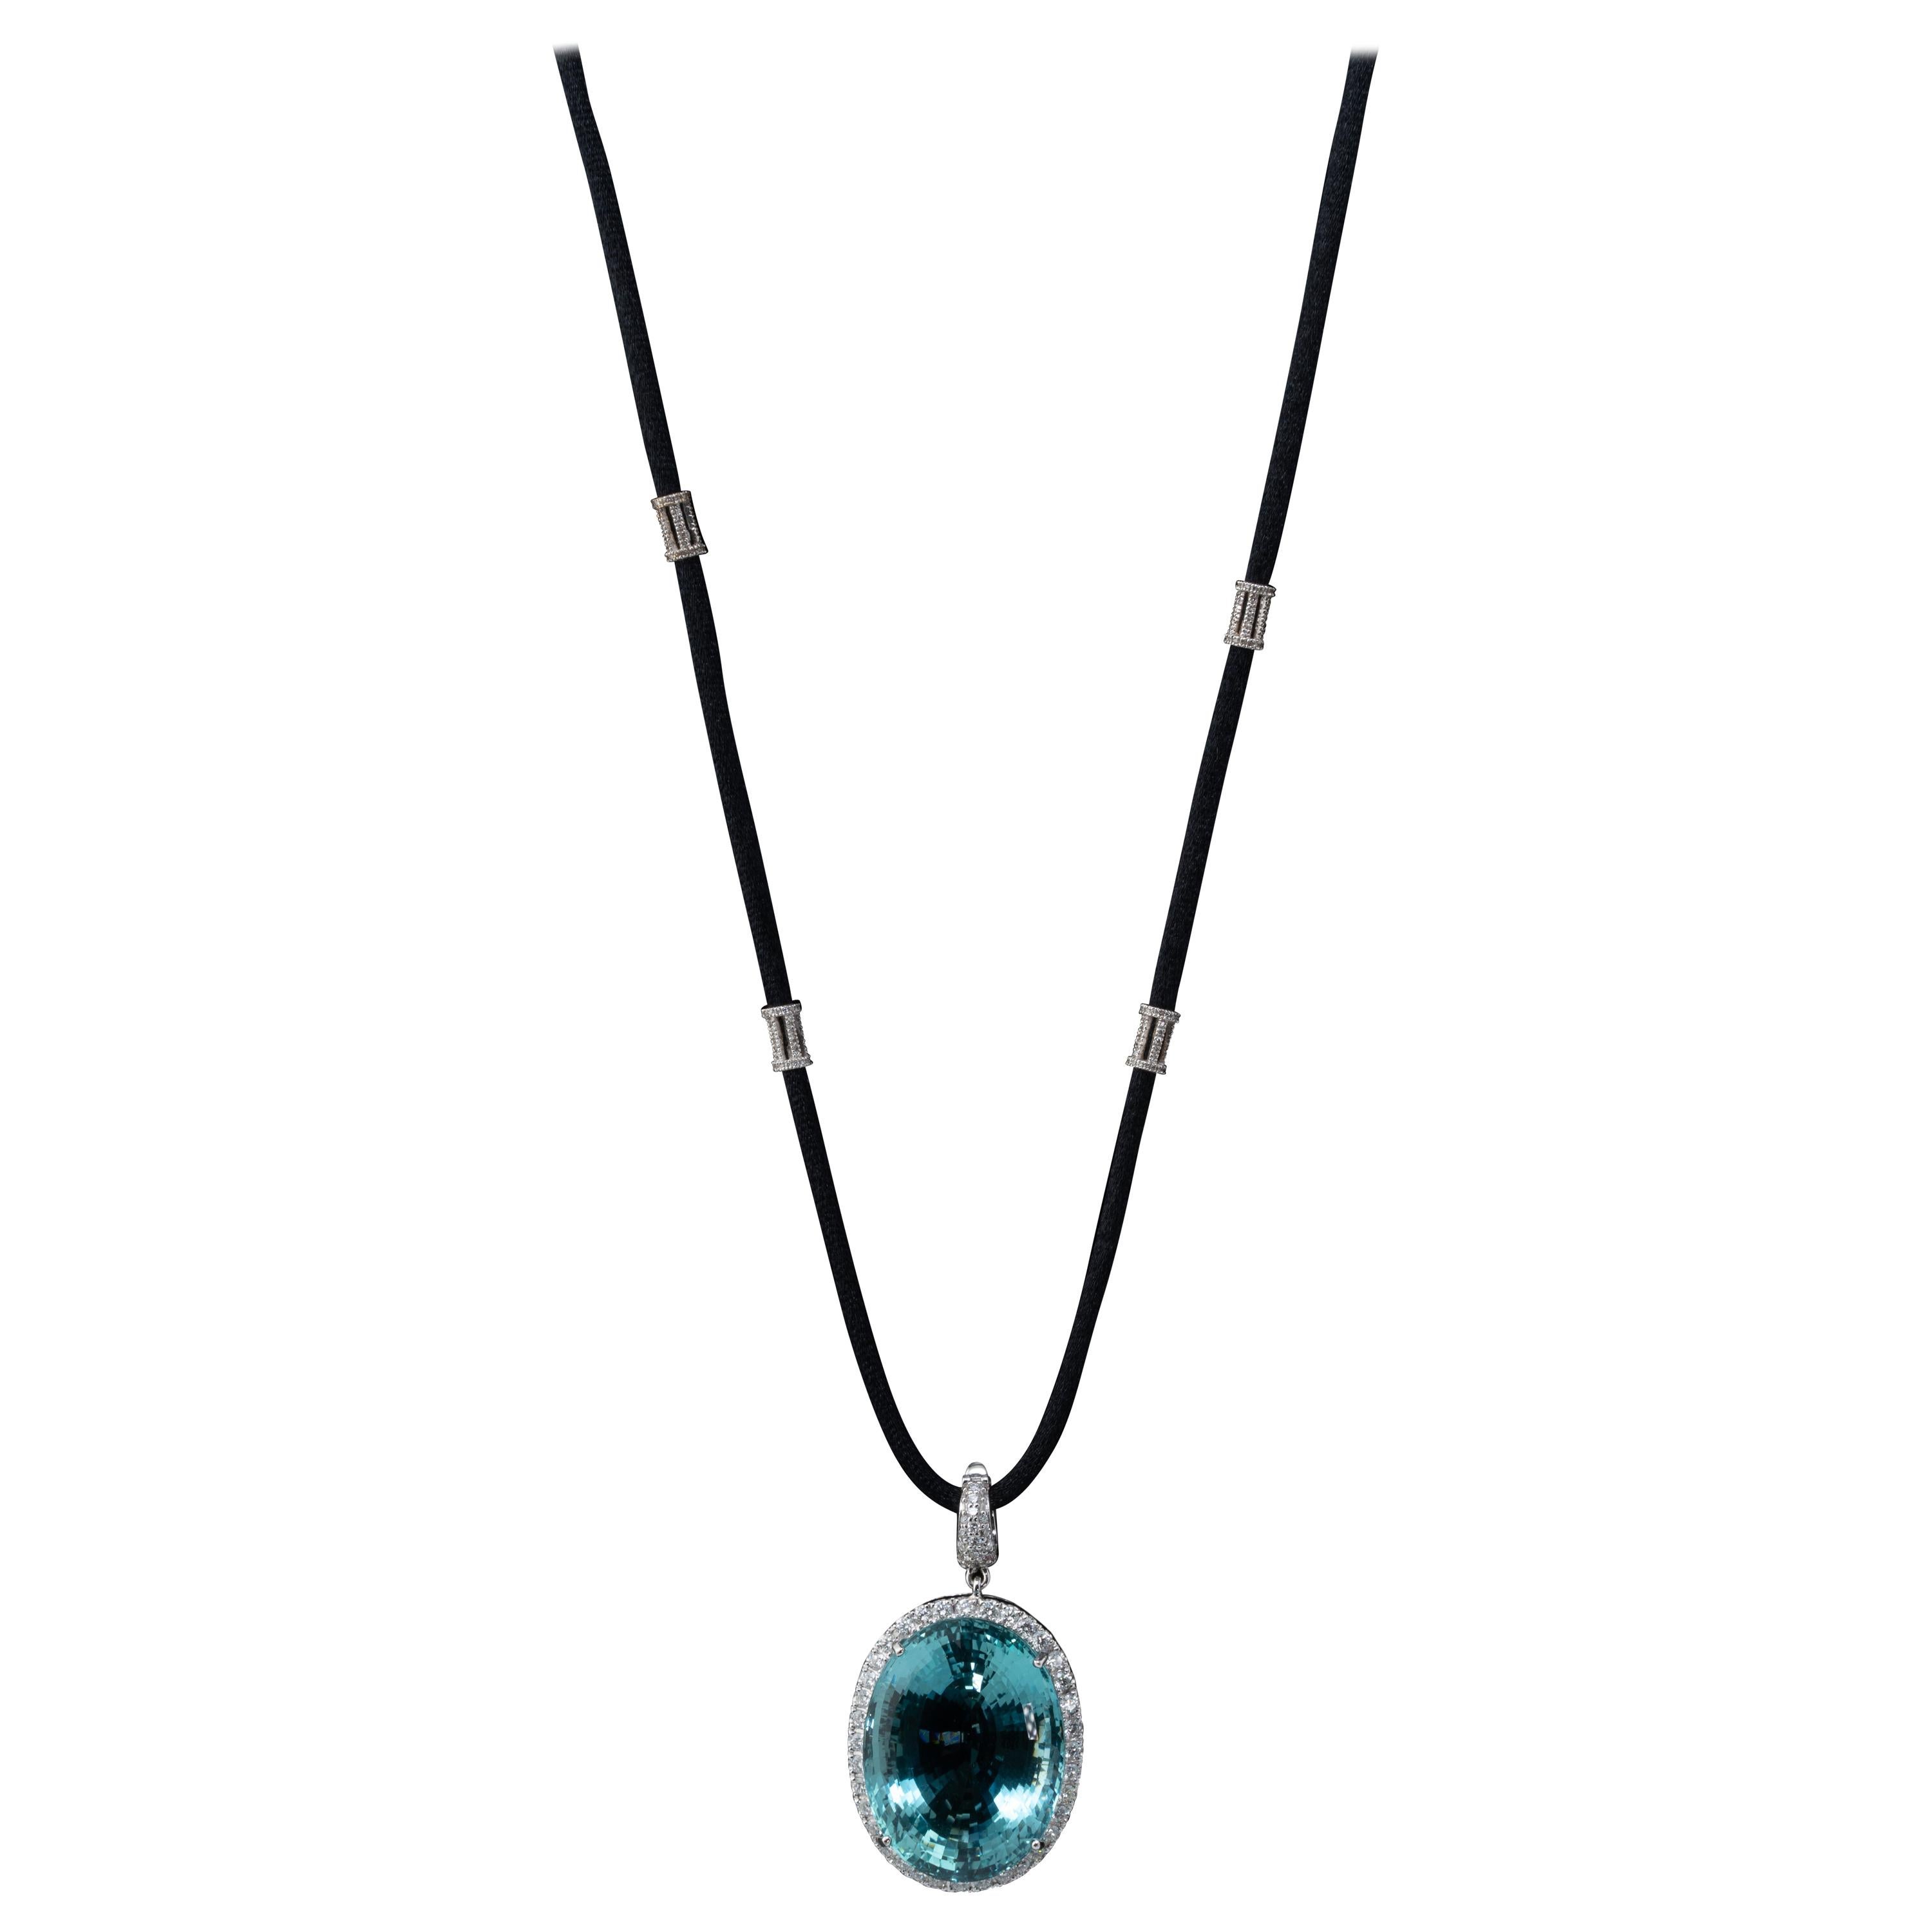 83.46 Carat Aquamarine and Diamond Pendant Necklace